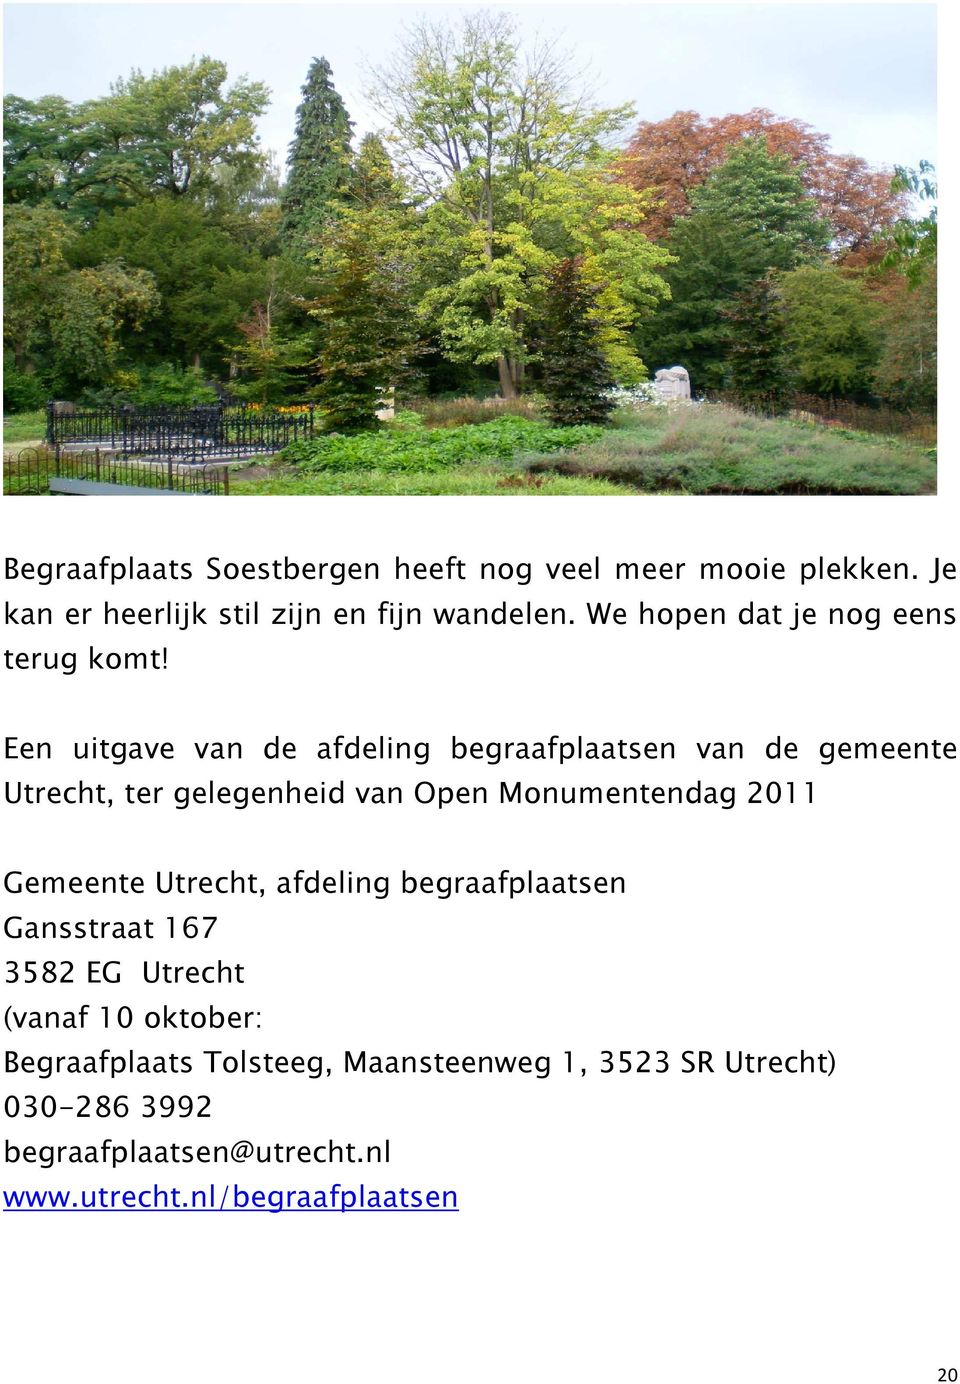 Een uitgave van de afdeling begraafplaatsen van de gemeente Utrecht, ter gelegenheid van Open Monumentendag 2011